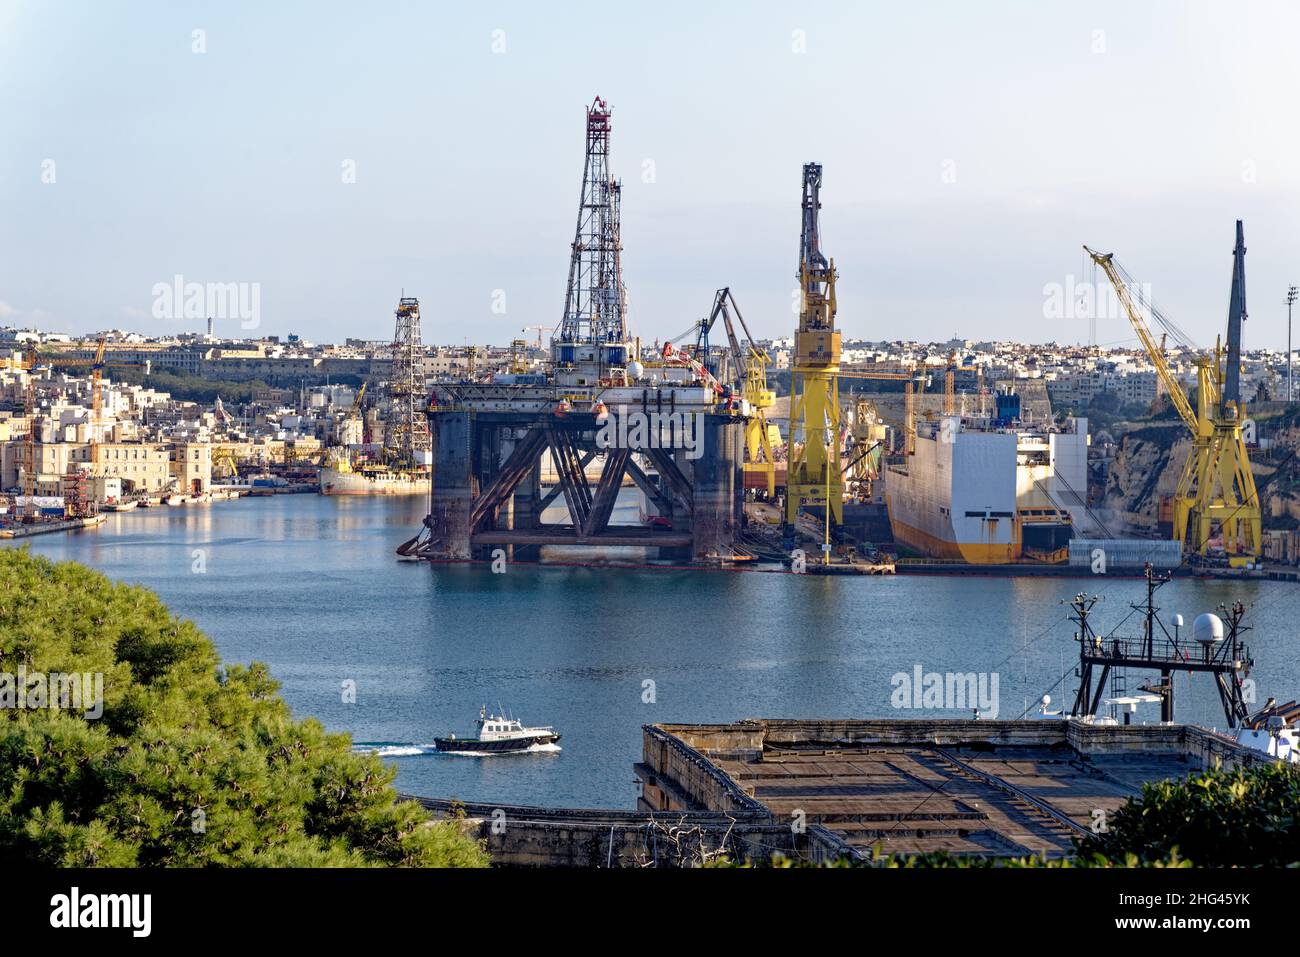 Activité industrielle et grues à quai French Creek, China Dock, il-Kortin, Grand Harbour, Valletta,Malte.Une grande plate-forme de forage dans le Grand Ha Banque D'Images